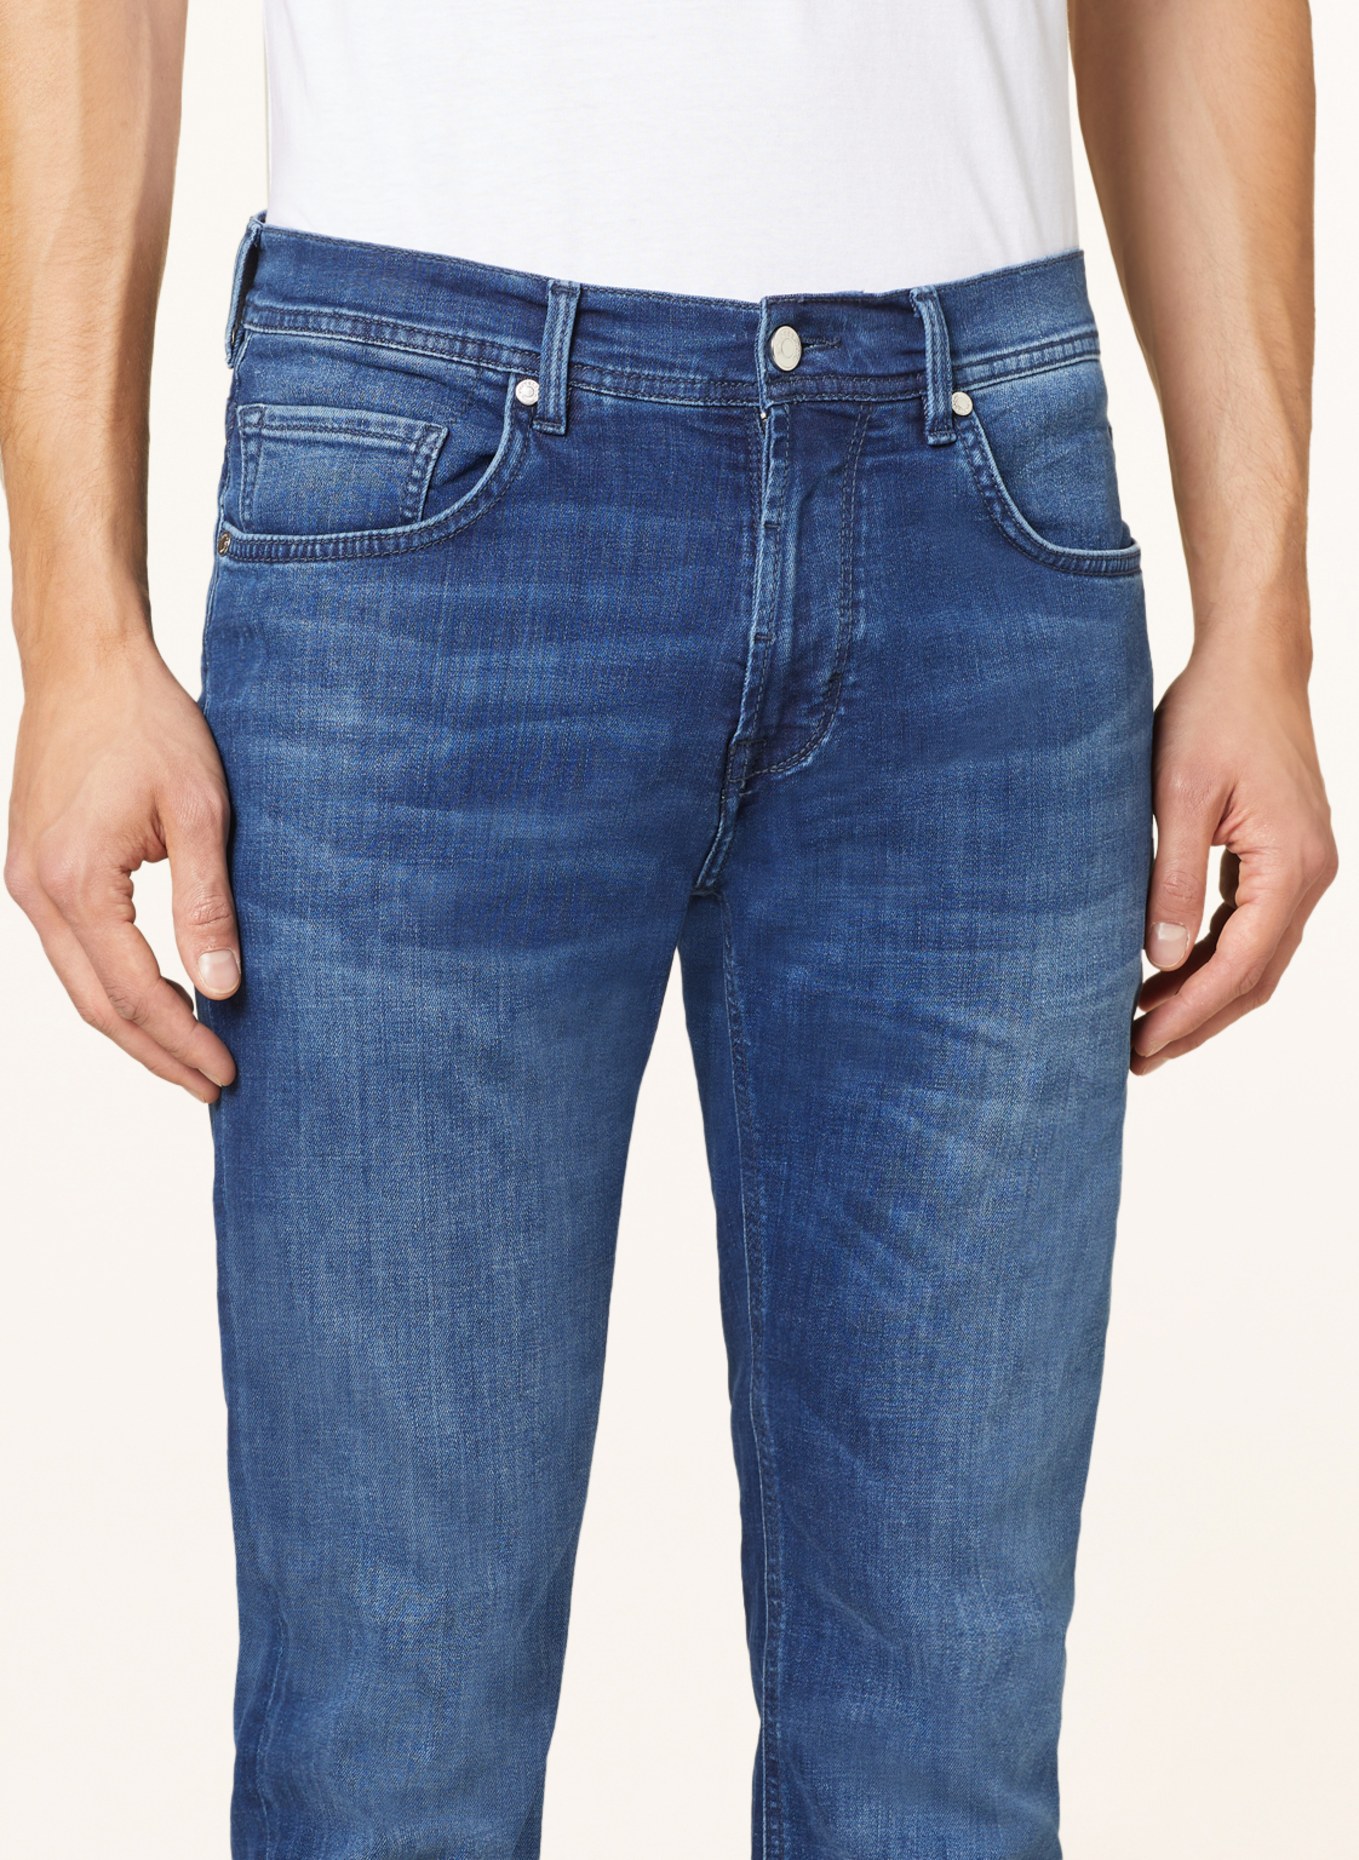 BALDESSARINI Jeans regular fit, Color: 6825 blue used whisker (Image 6)